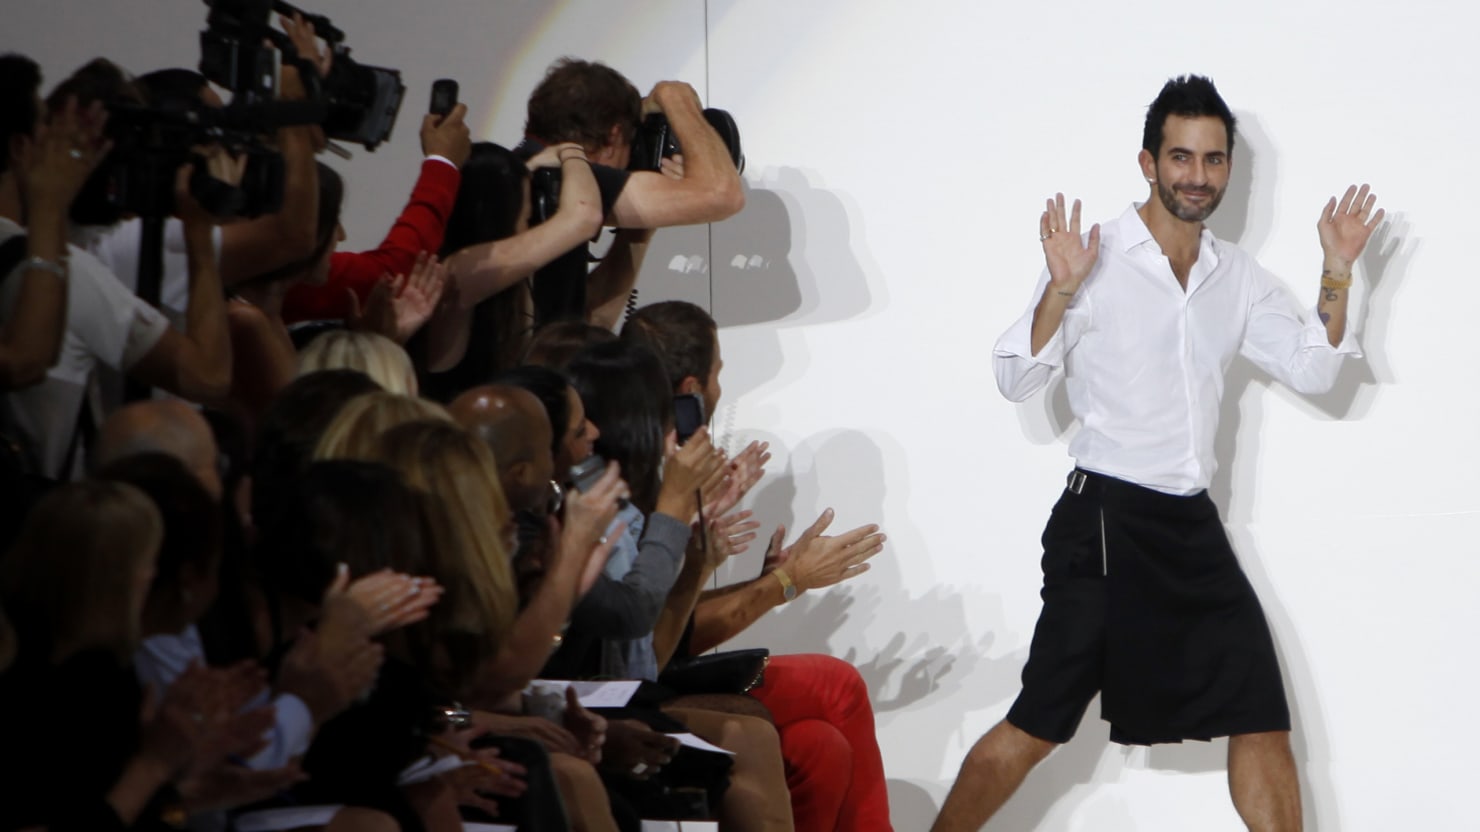 Marc Jacobs Unveils His Final Louis Vuitton Ads